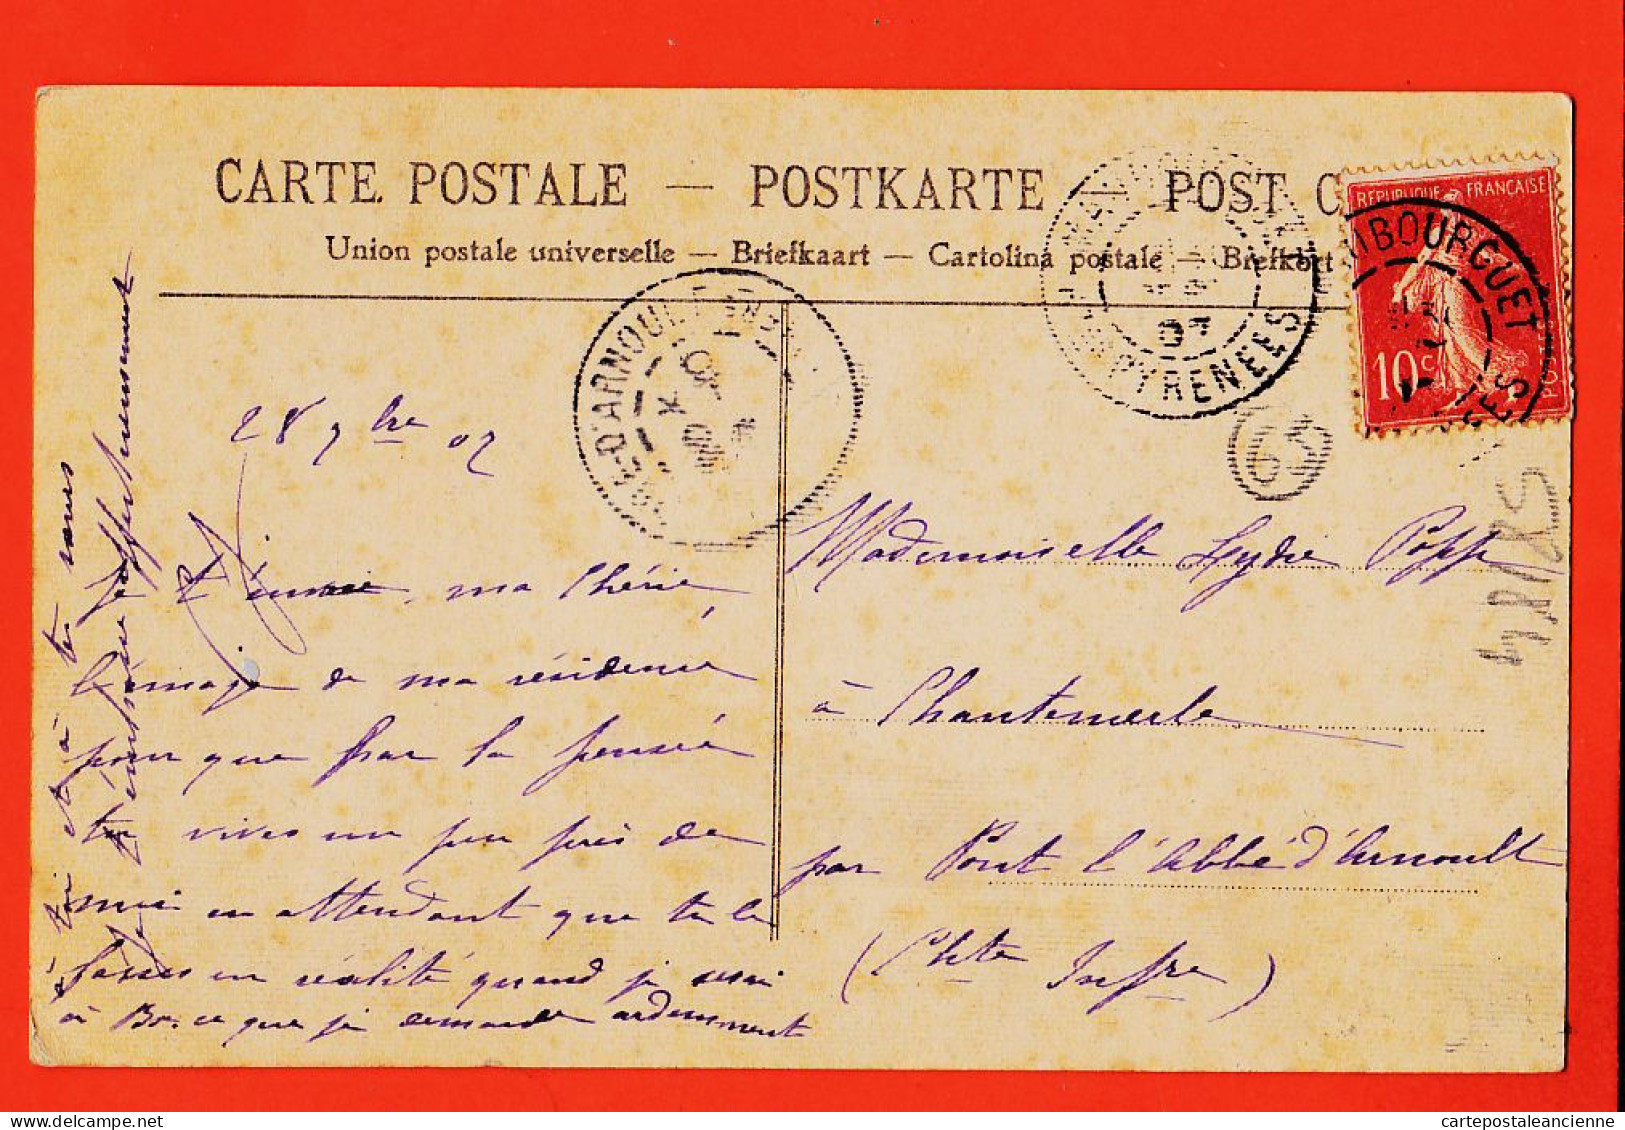 07741 ● ● Rare Carte Toilée MAUBOURGUET (65) Chateau BELLE-ALLEE 1907 à Lydie POPPE Chantemerle Pont Abbé Arnoult - Maubourguet